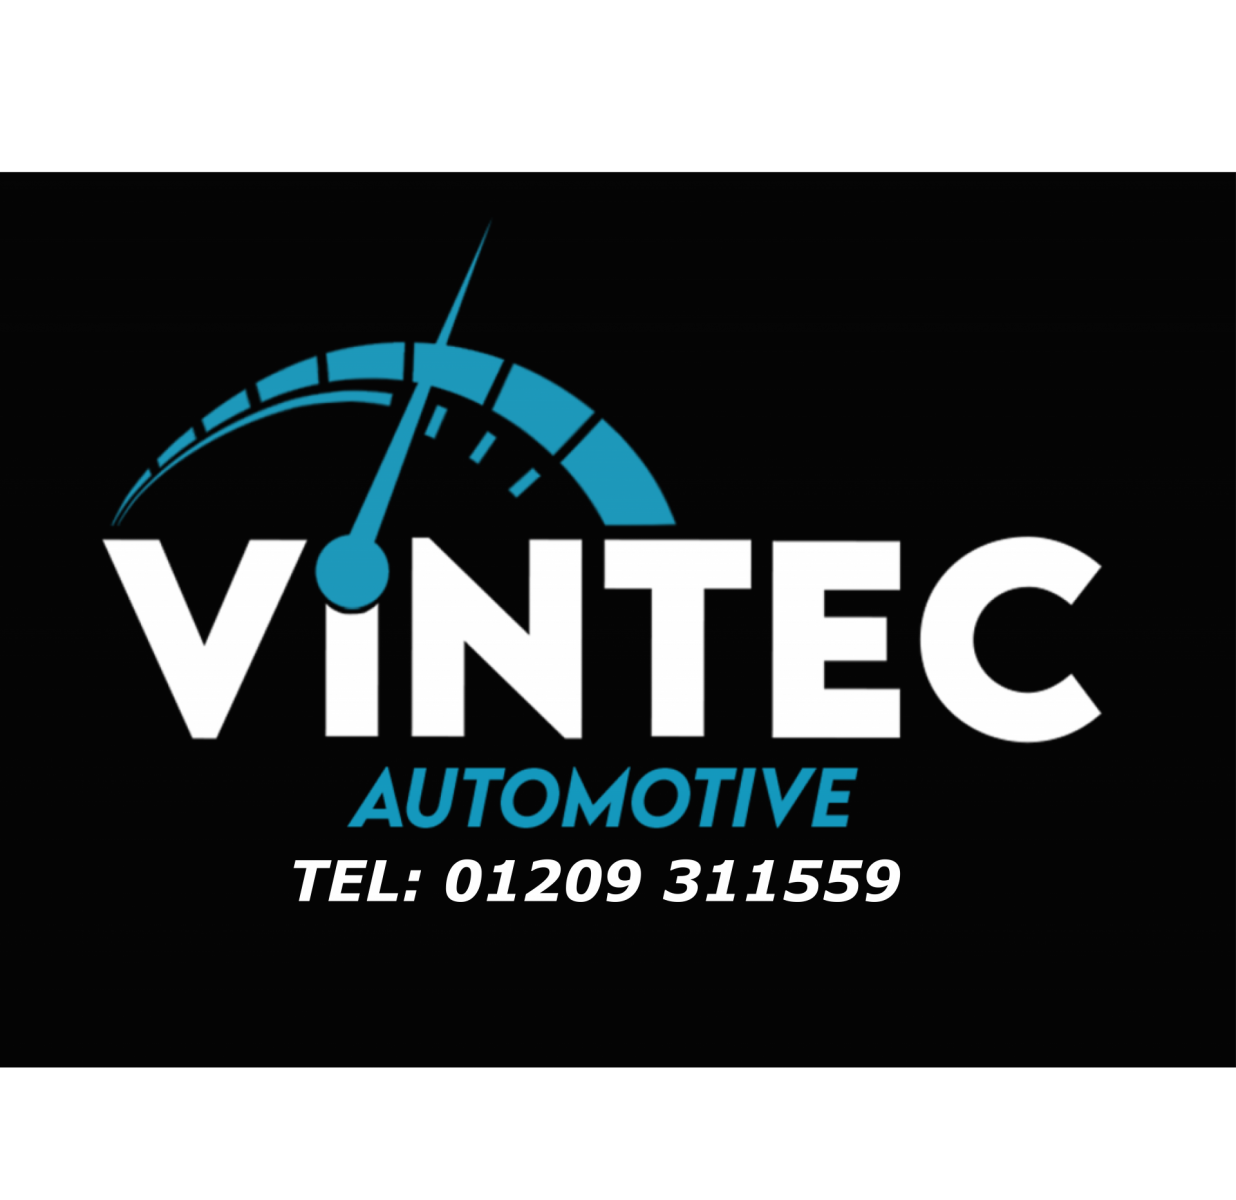 Vintec Automotive Limited